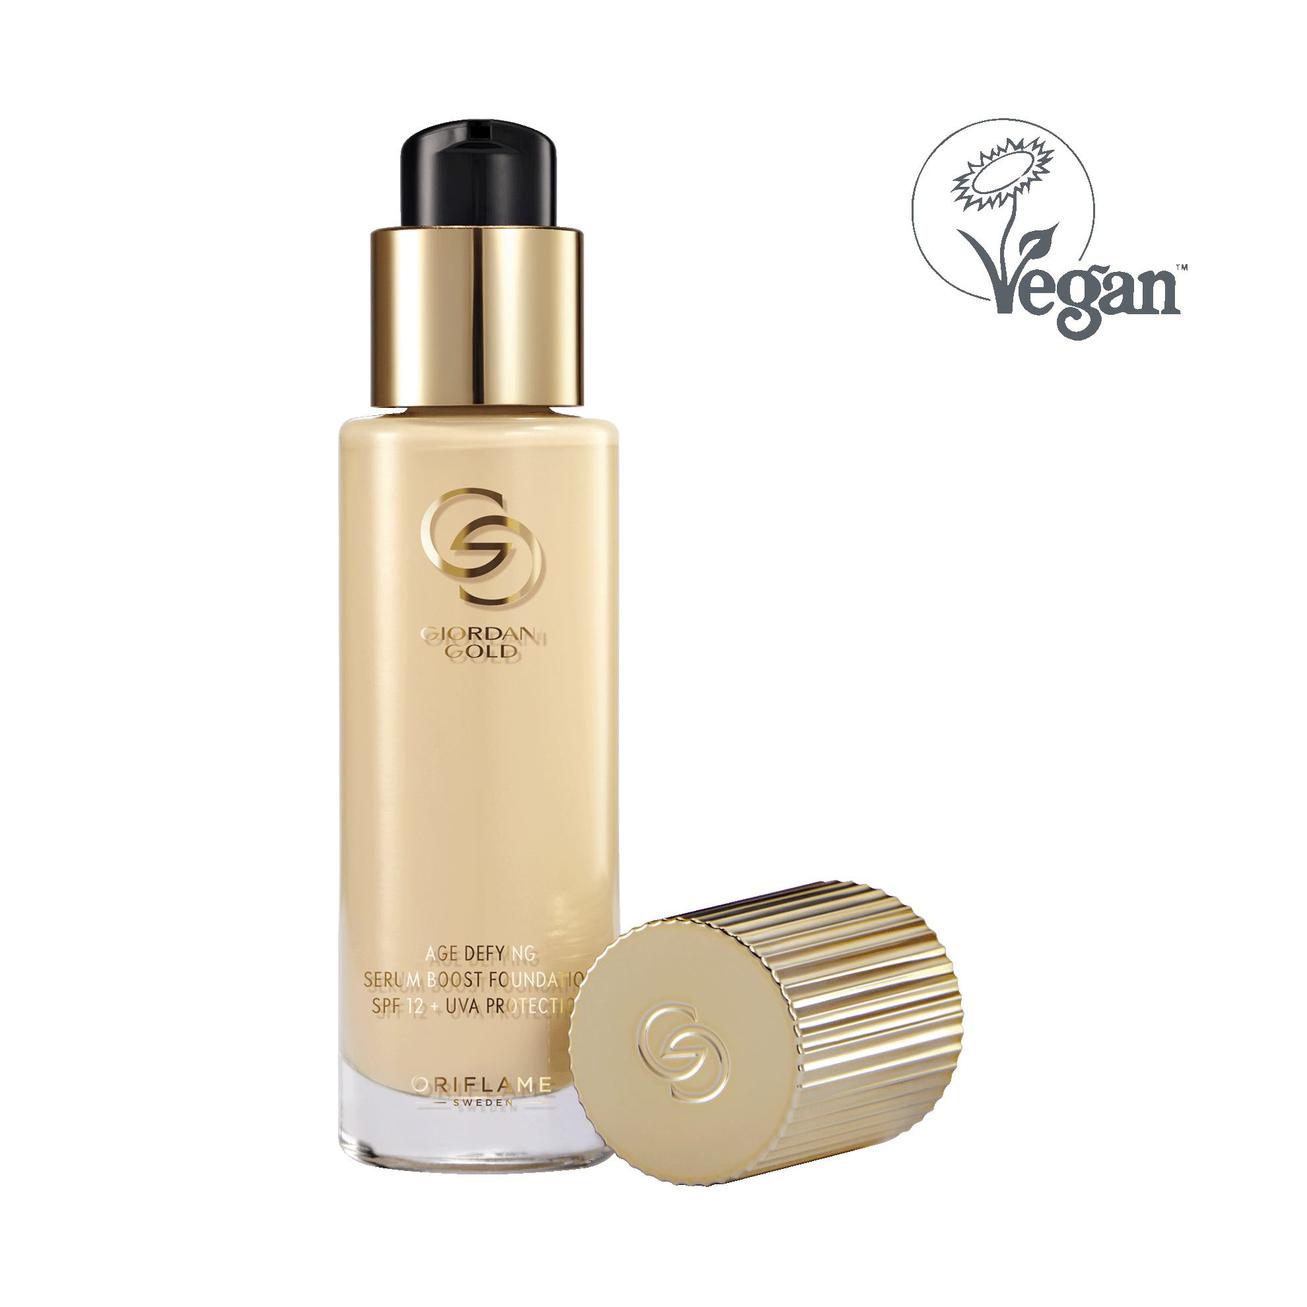 Oferta de Maquillaje Antienvejecimiento Serum Boost SPF 12 + Protección UVA Giordani Gold por 23,99€ en Oriflame